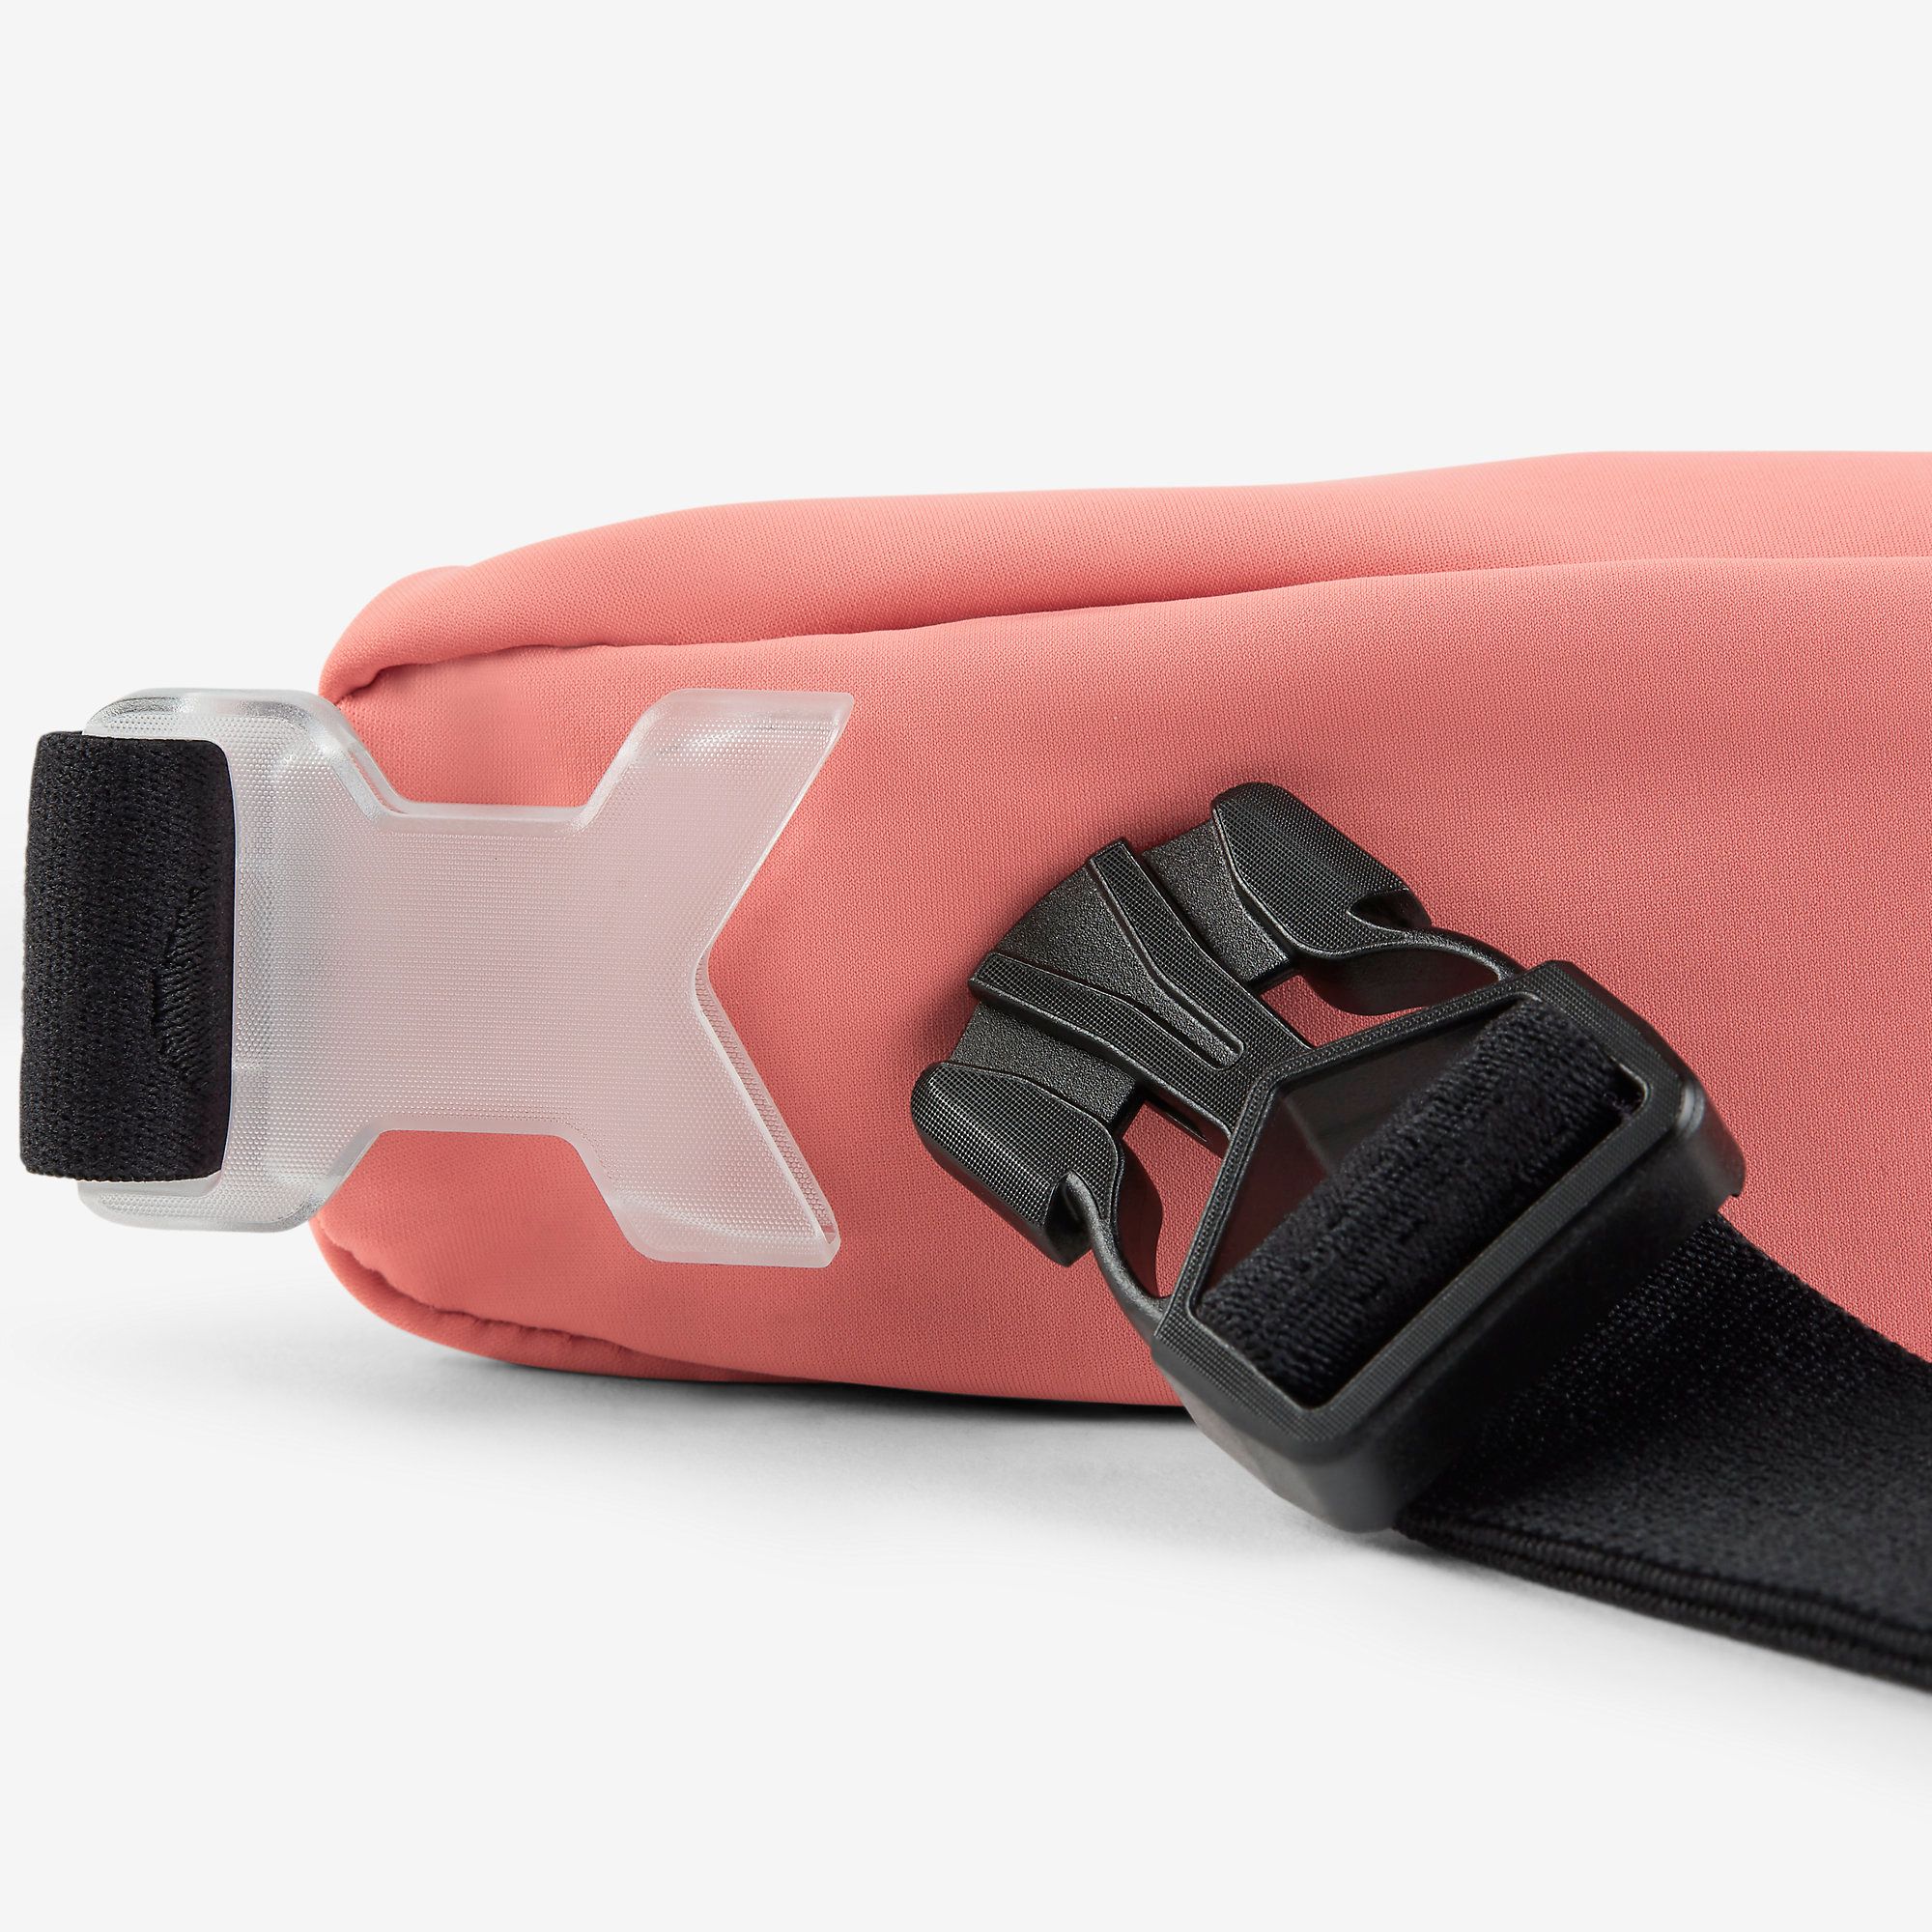  Nike Slim Waist Pack 2.0 - Pink 